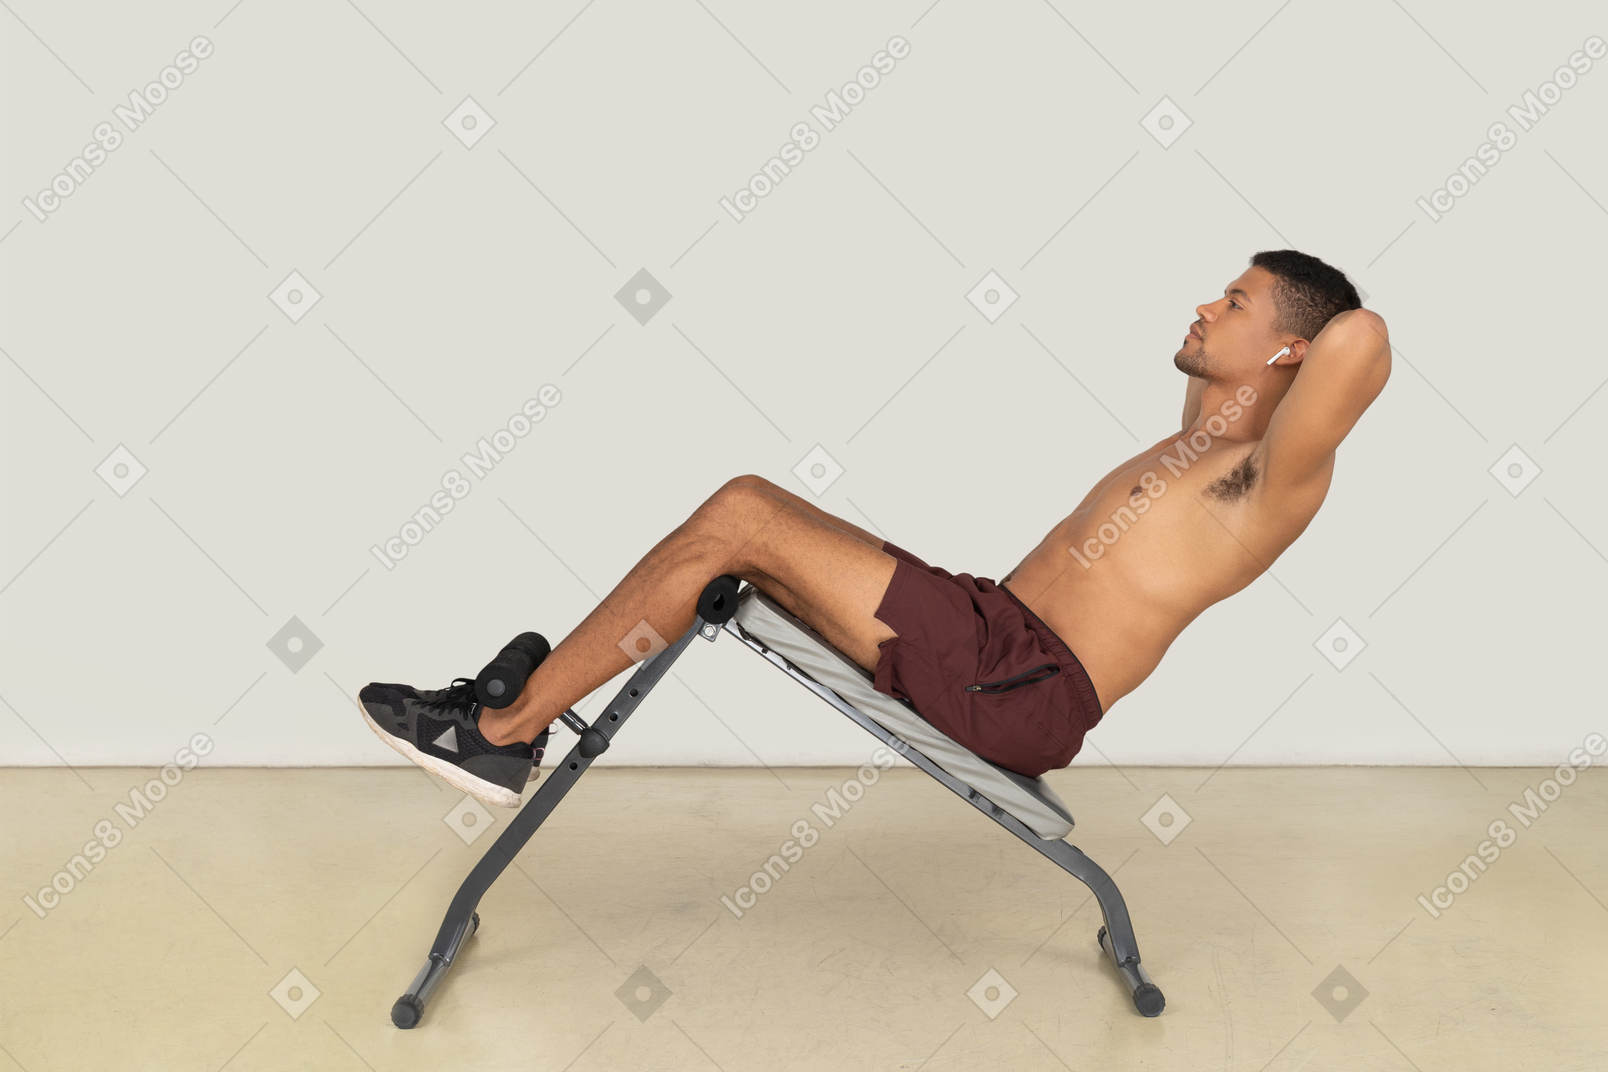 Vista lateral del hombre haciendo ejercicios abdominales en banco.